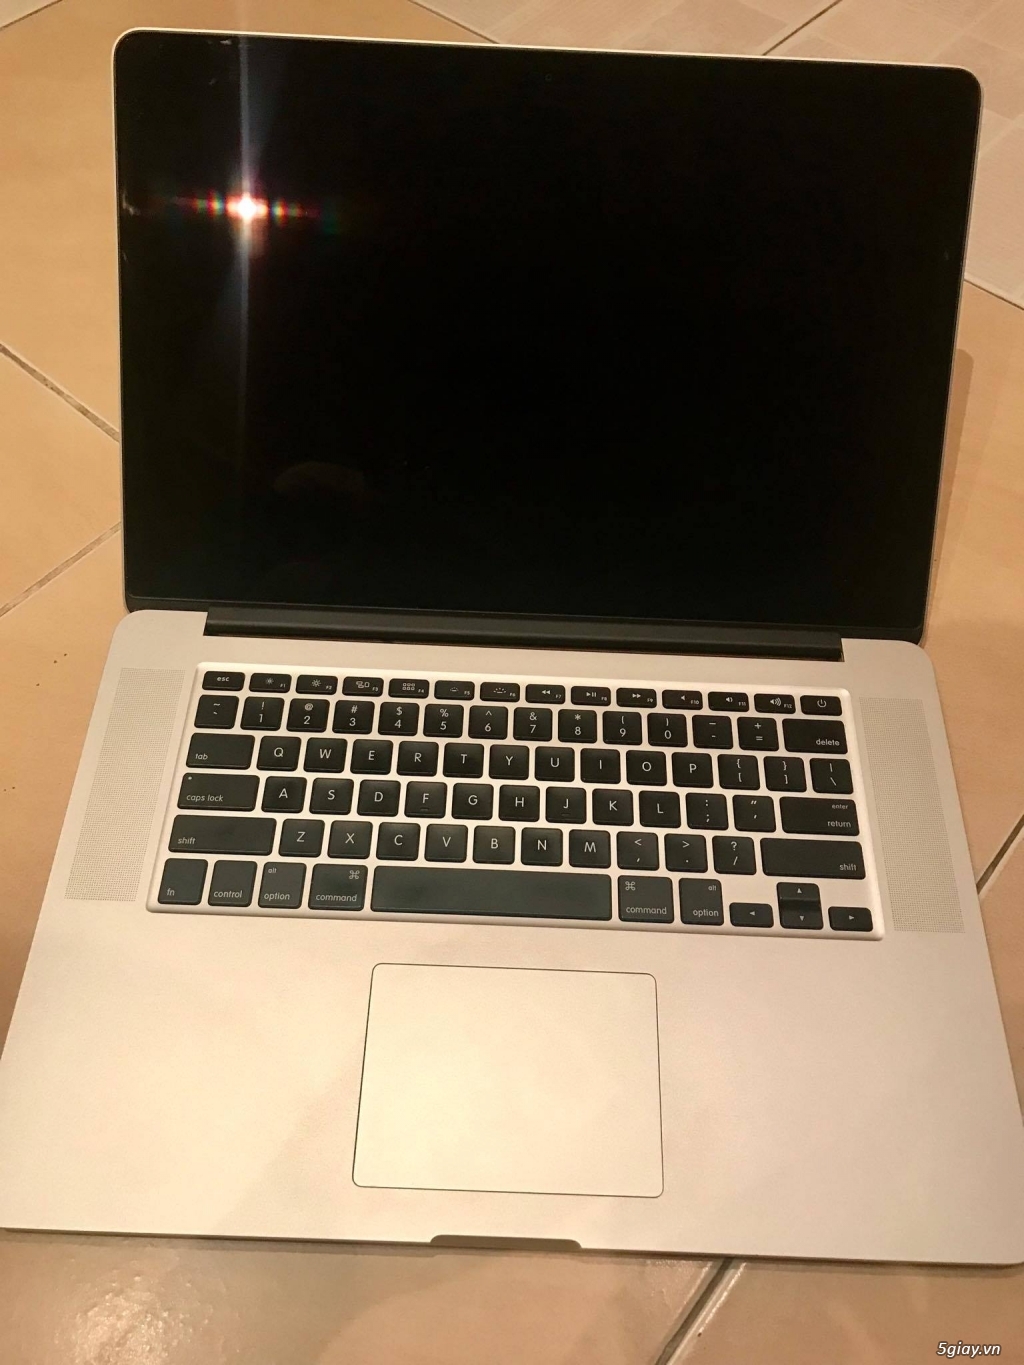 MacBook Pro (Retina, 15-inch, Mid 2014, A1398) i7, 16gb RAM, 1TB SSD - 5